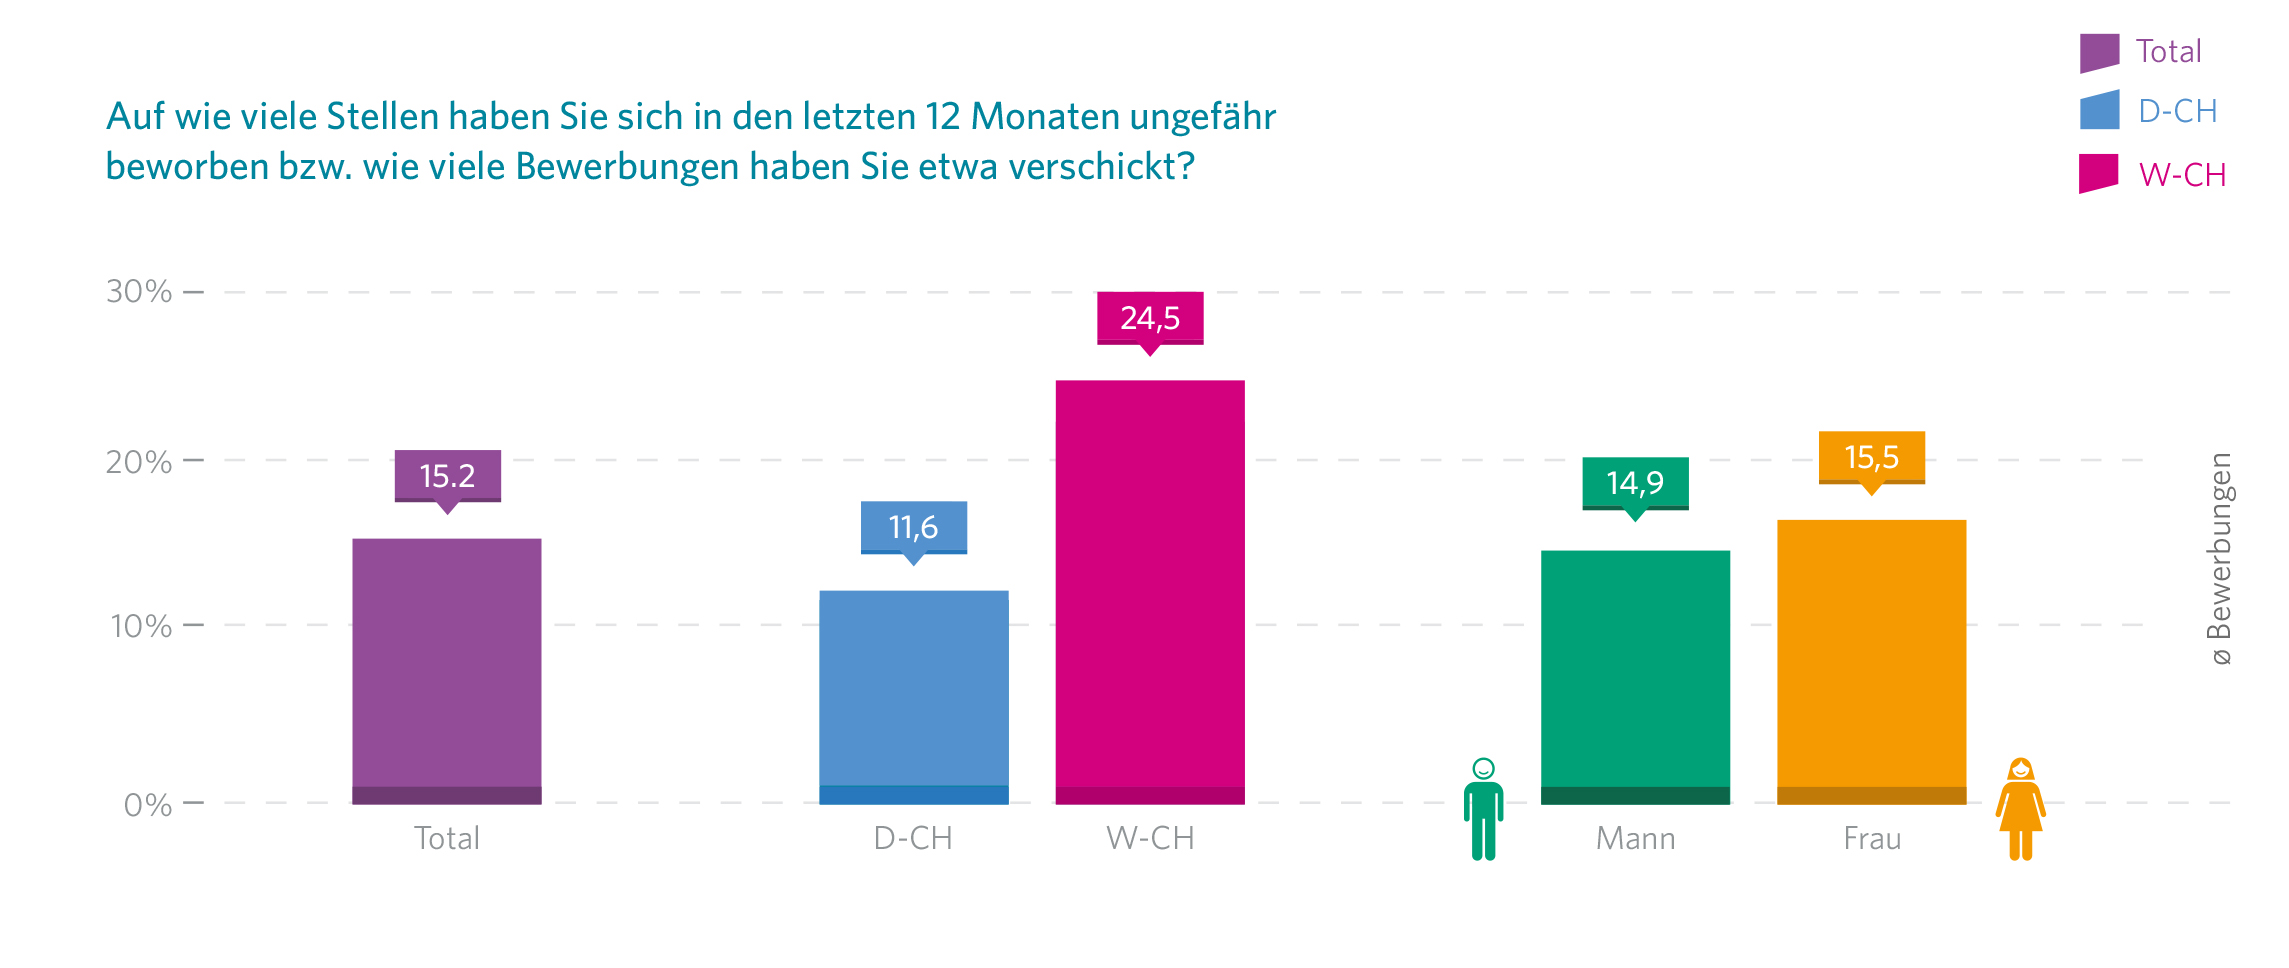 Romands bewerben sich doppelt so häufig wie Deutschschweizer gemäss der JobCloud Arbeitsmarkt-Studie